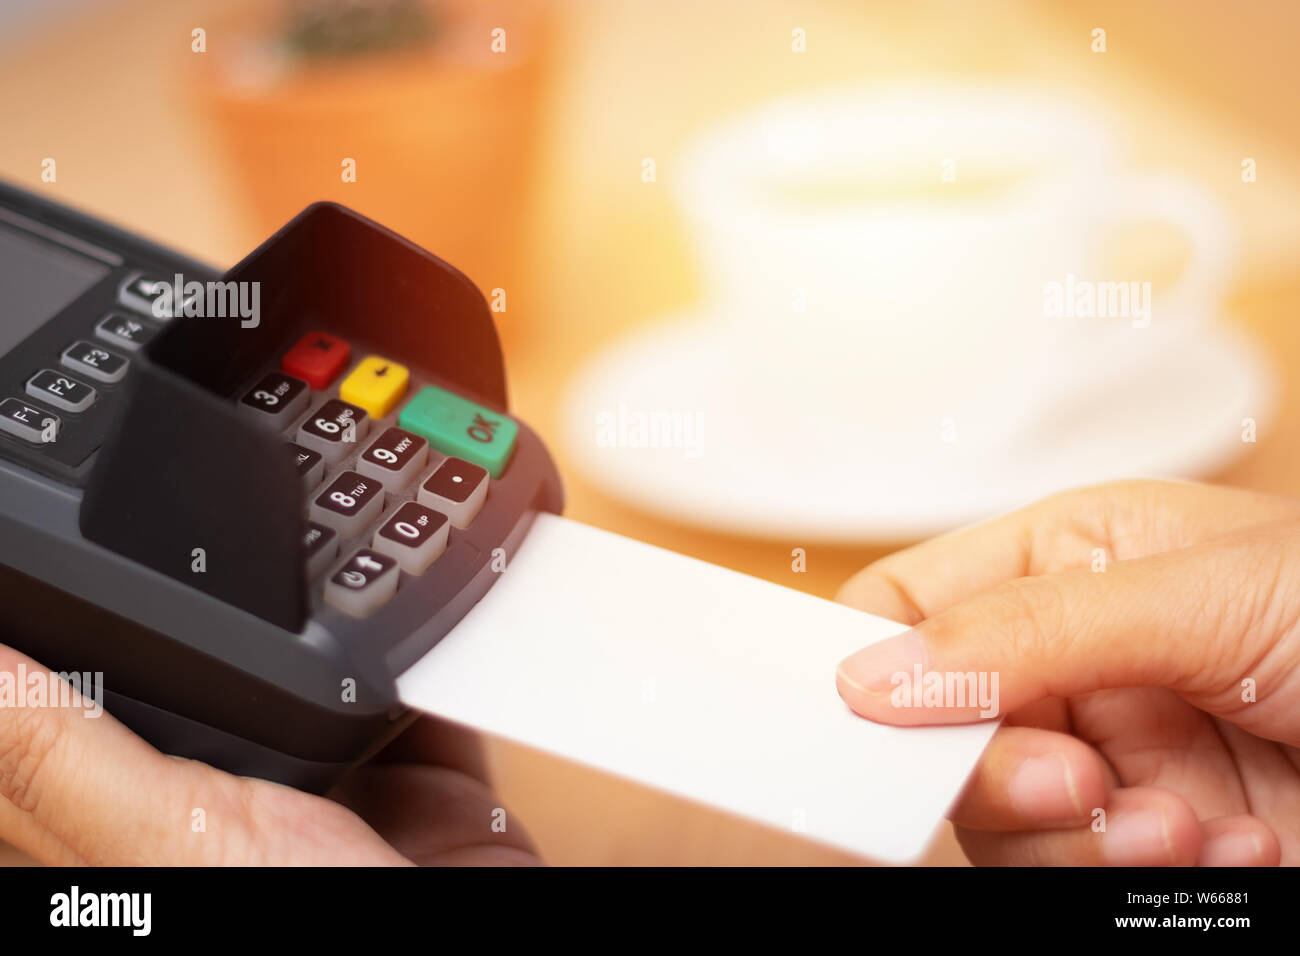 Concept de paiement par carte de crédit. close-up part insérer maquette carte de crédit avec une carte vierge blanc avec une machine à balayage de carte de terminal de point de vente dans le COF Banque D'Images